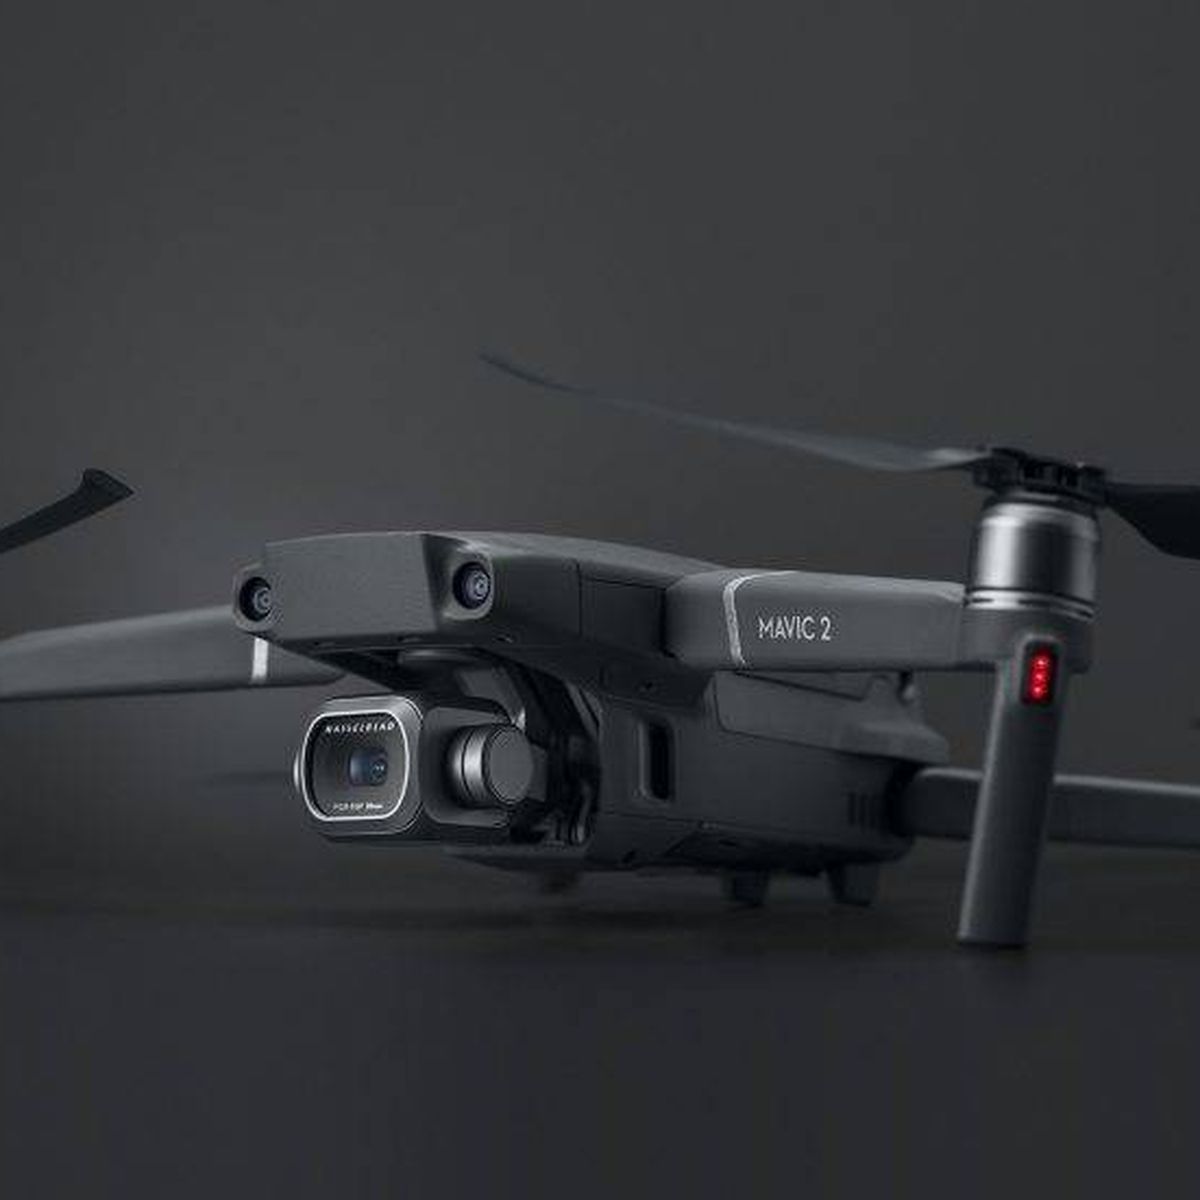 El Mavic 2 llega con megacámara a bordo: es el nuevo dron del gigante chino DJI